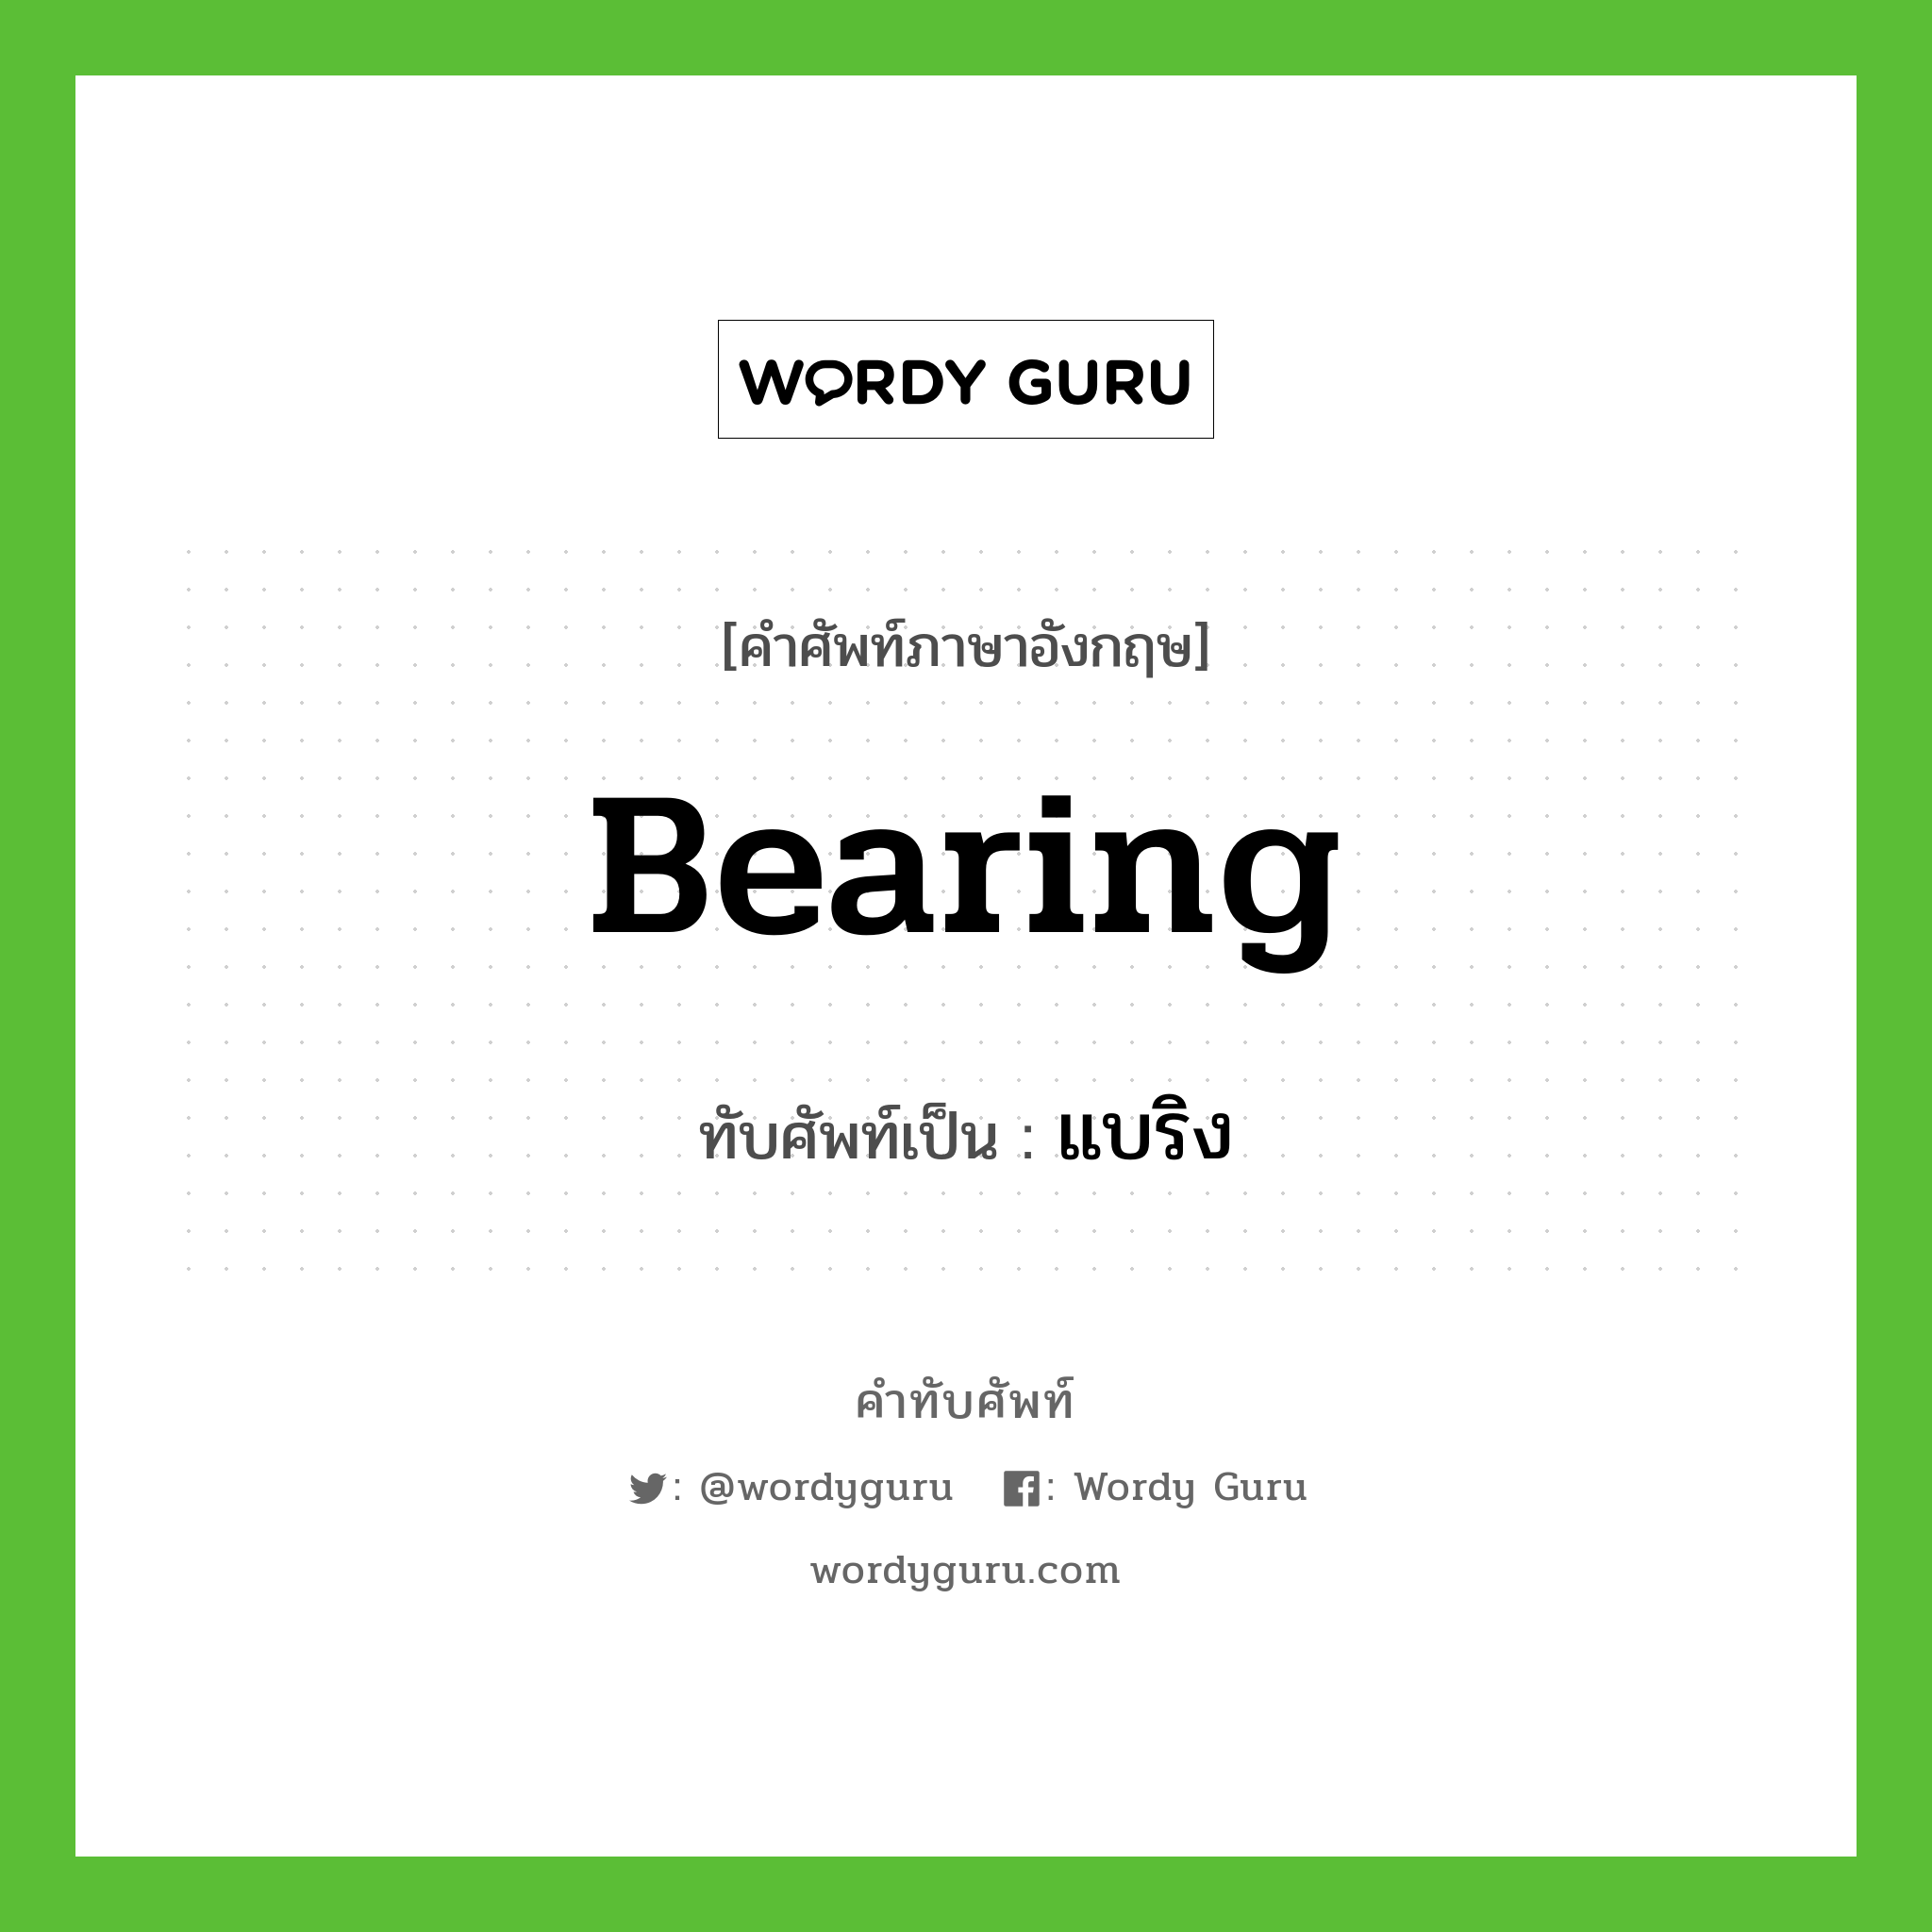 bearing เขียนเป็นคำไทยว่าอะไร?, คำศัพท์ภาษาอังกฤษ bearing ทับศัพท์เป็น แบริง